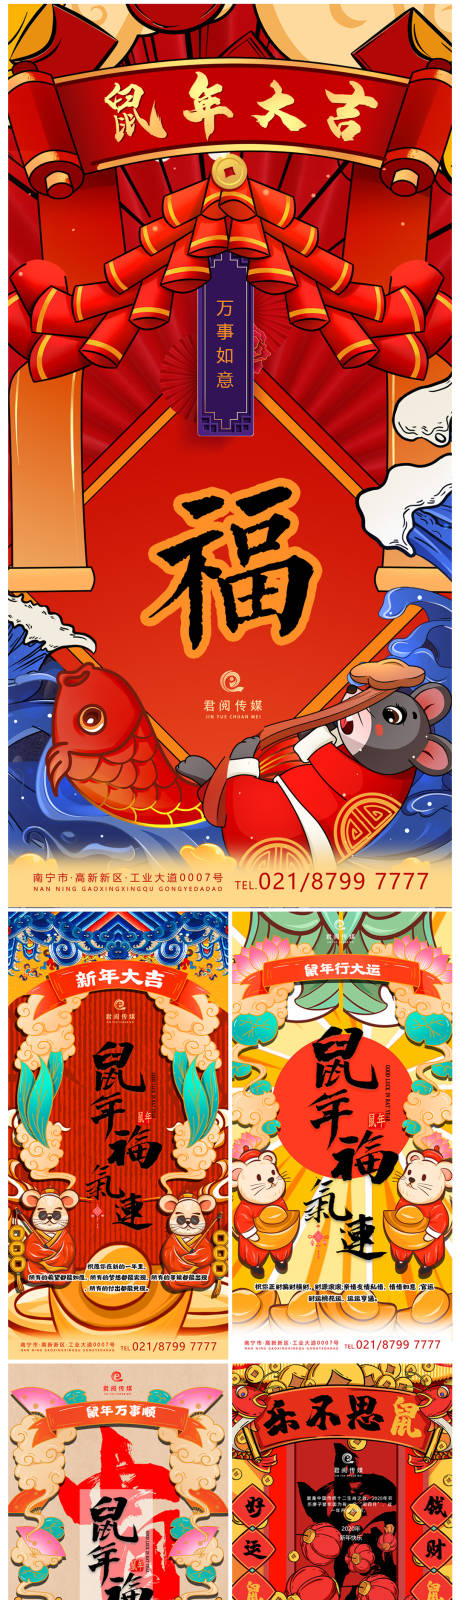 鼠年春节贺岁插画移动端海报系列